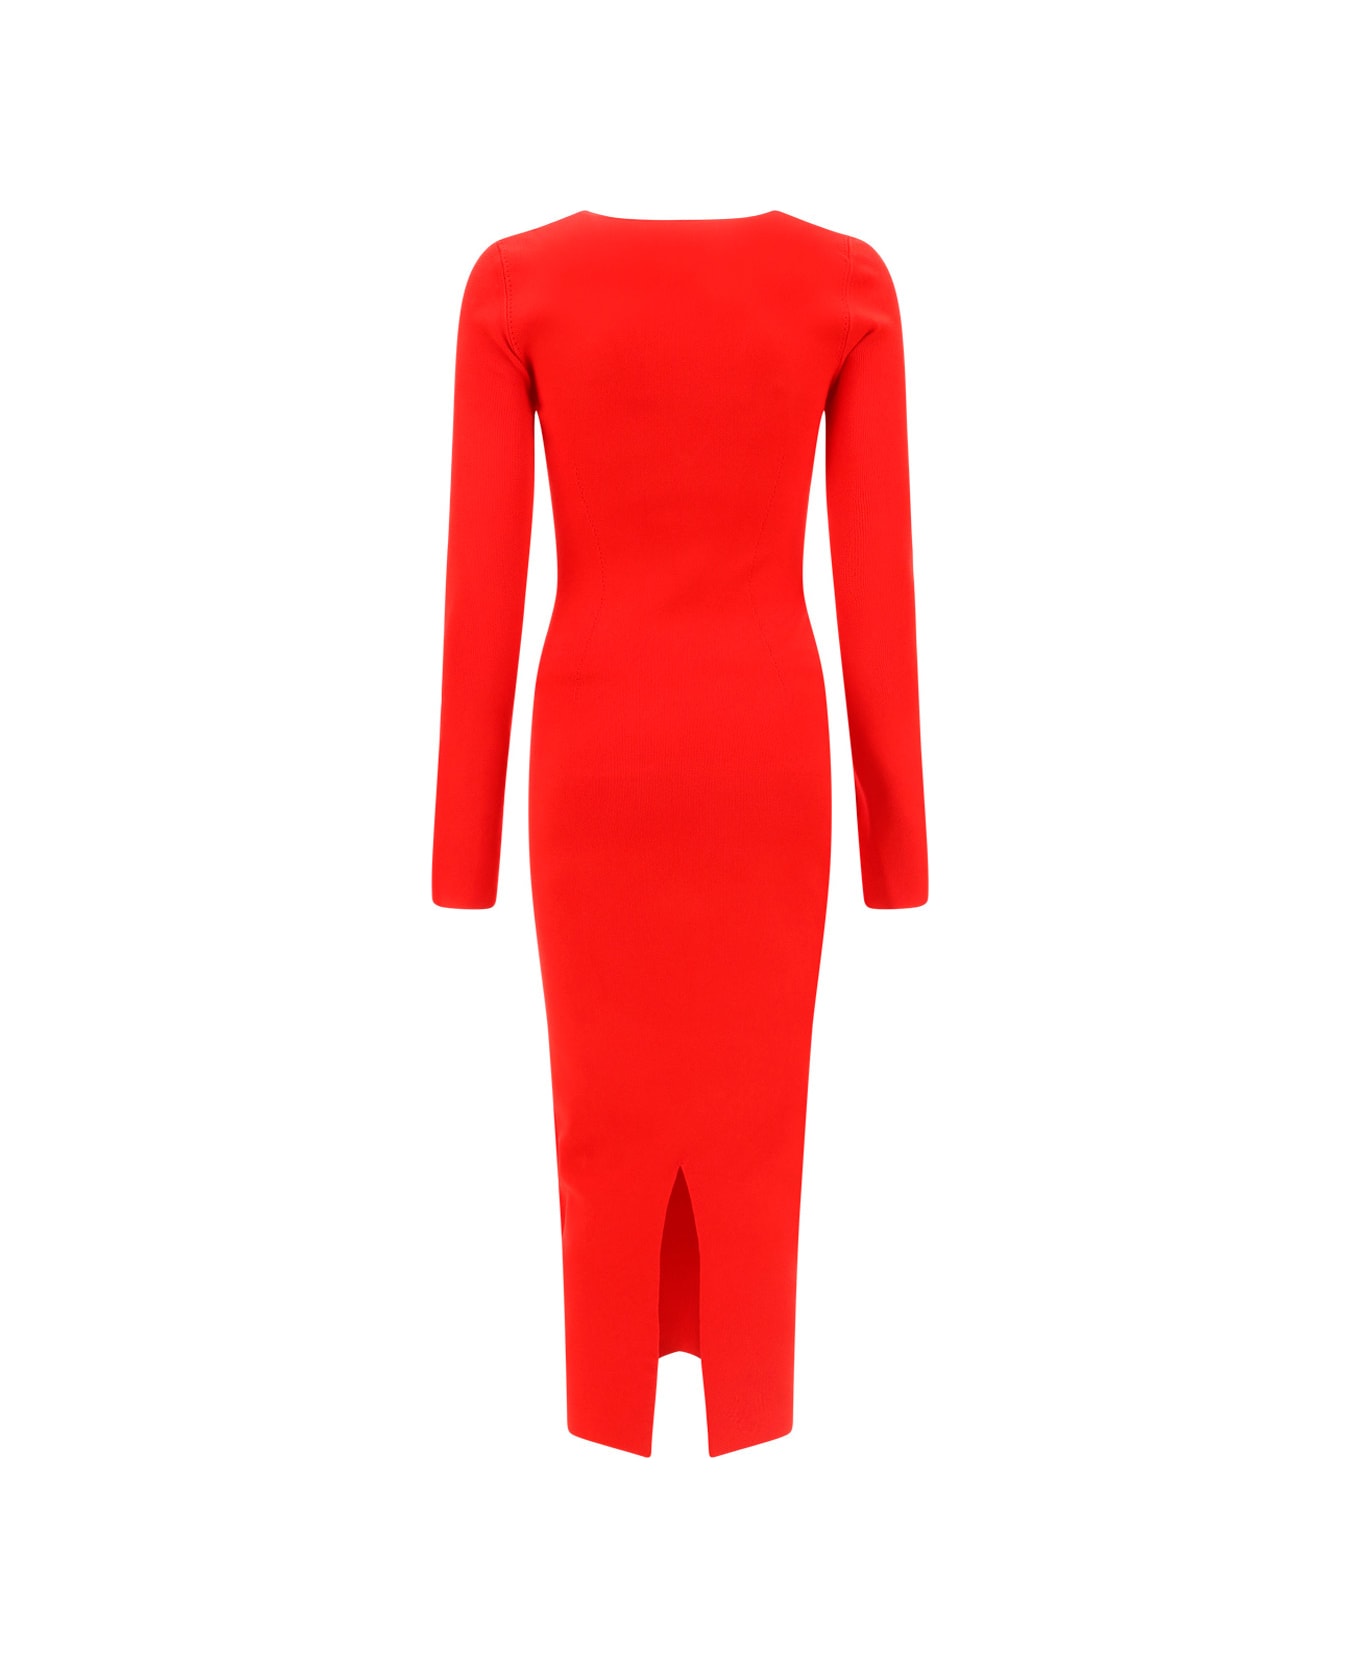 Victoria Beckham Deep Vee Dress - Red